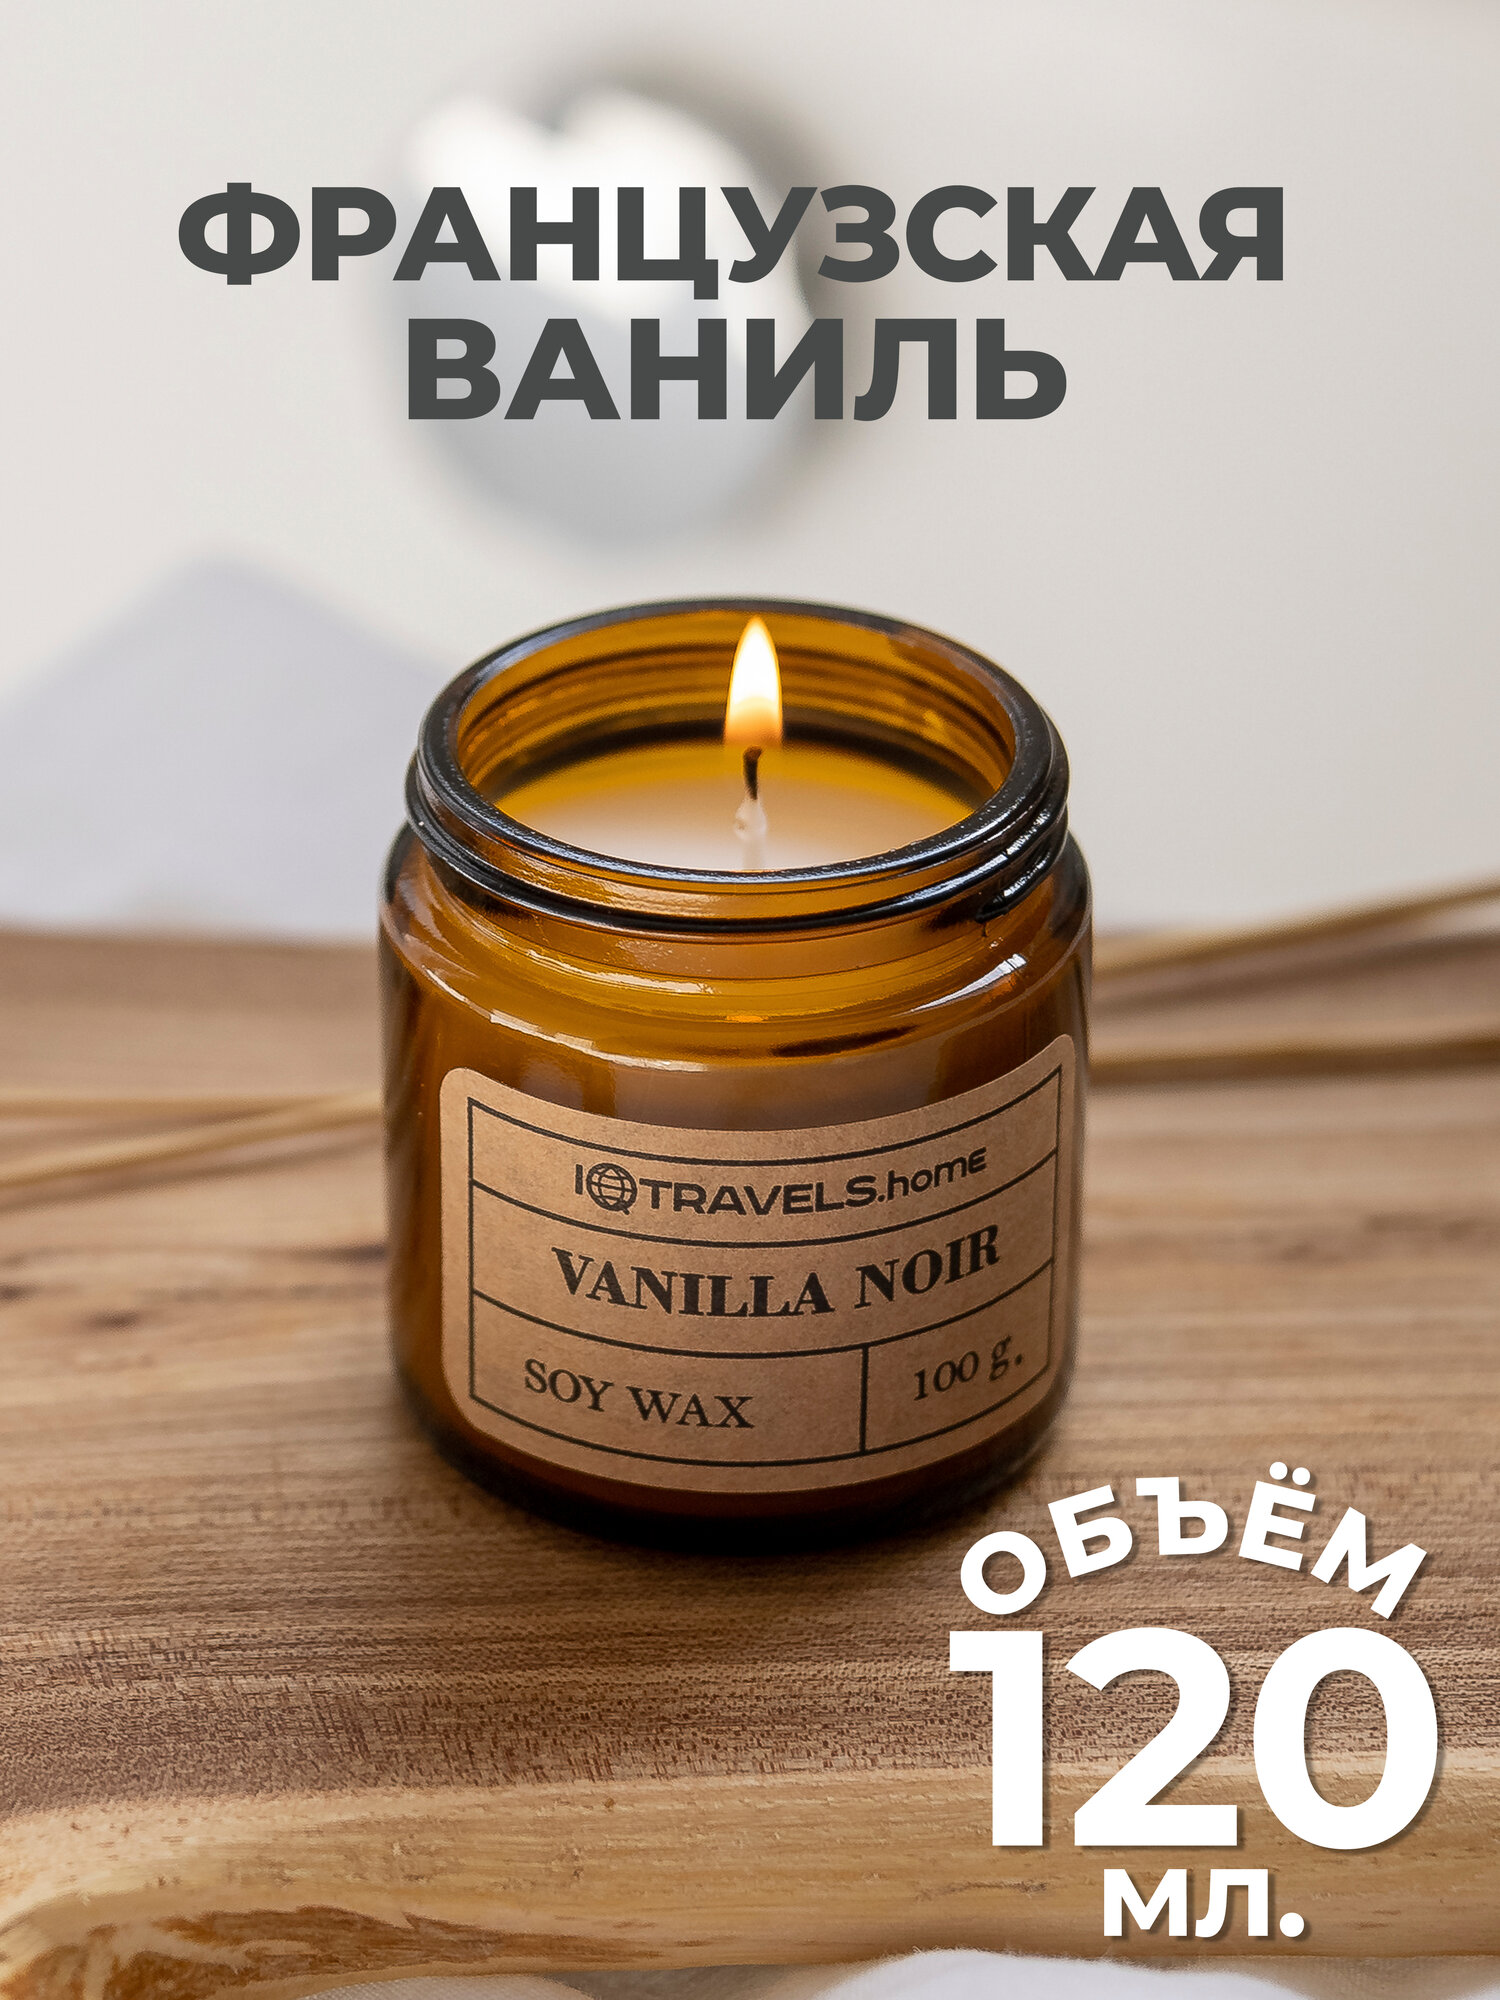 Ароматическая свеча для дома IQTRAVELS - Французская ваниль.